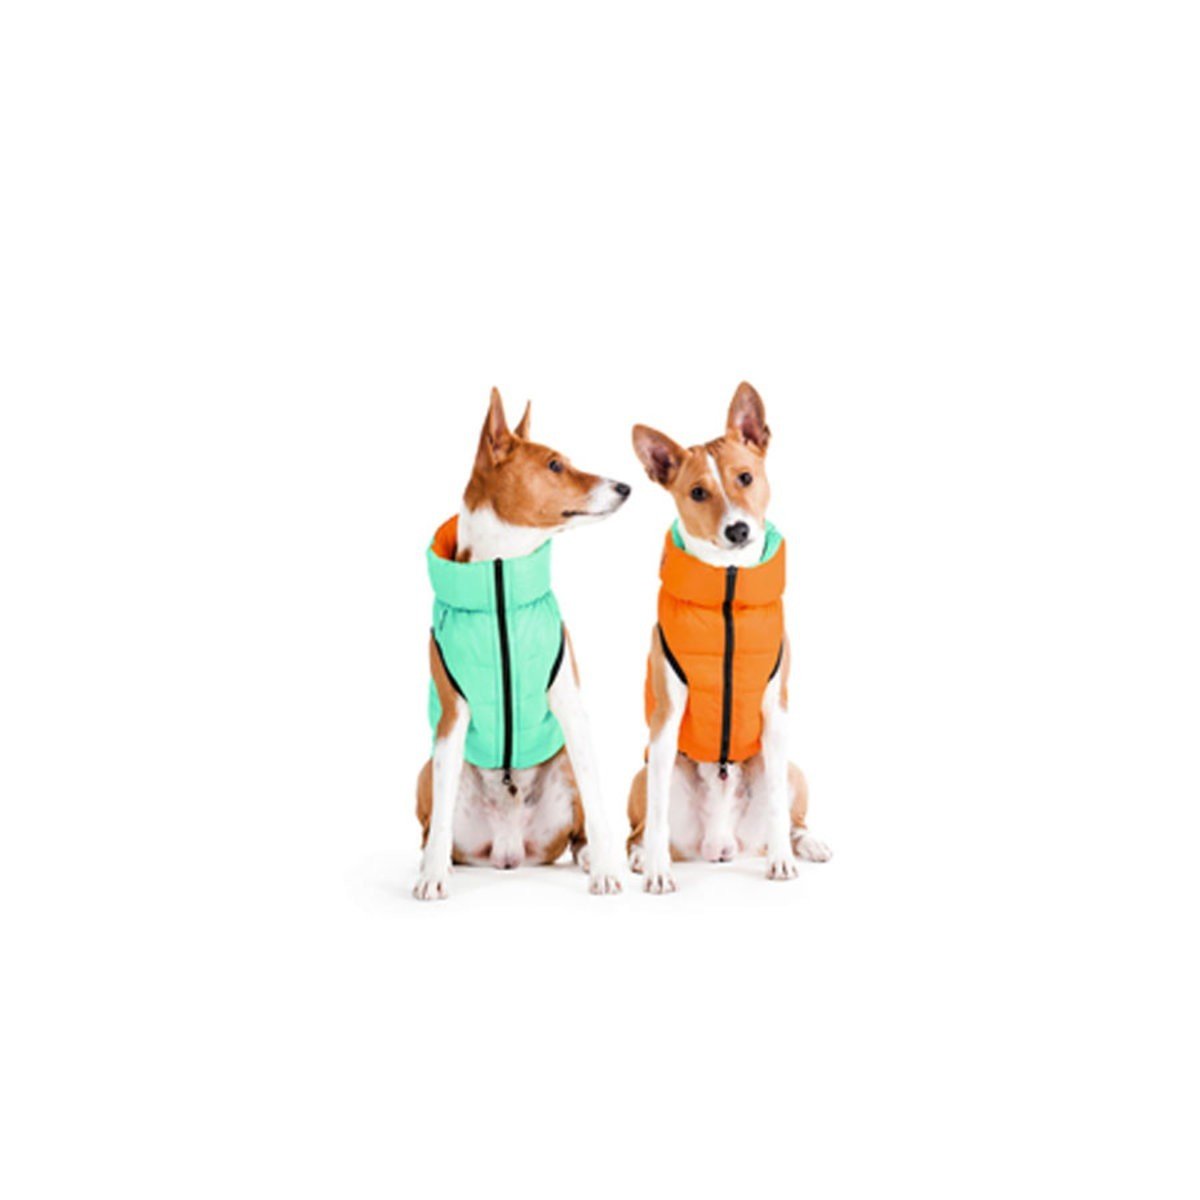 Курточка для собак AiryVest Lumi двухсторонняя, светящаяся в темноте, M40, салатово-оранжевая - фото 2